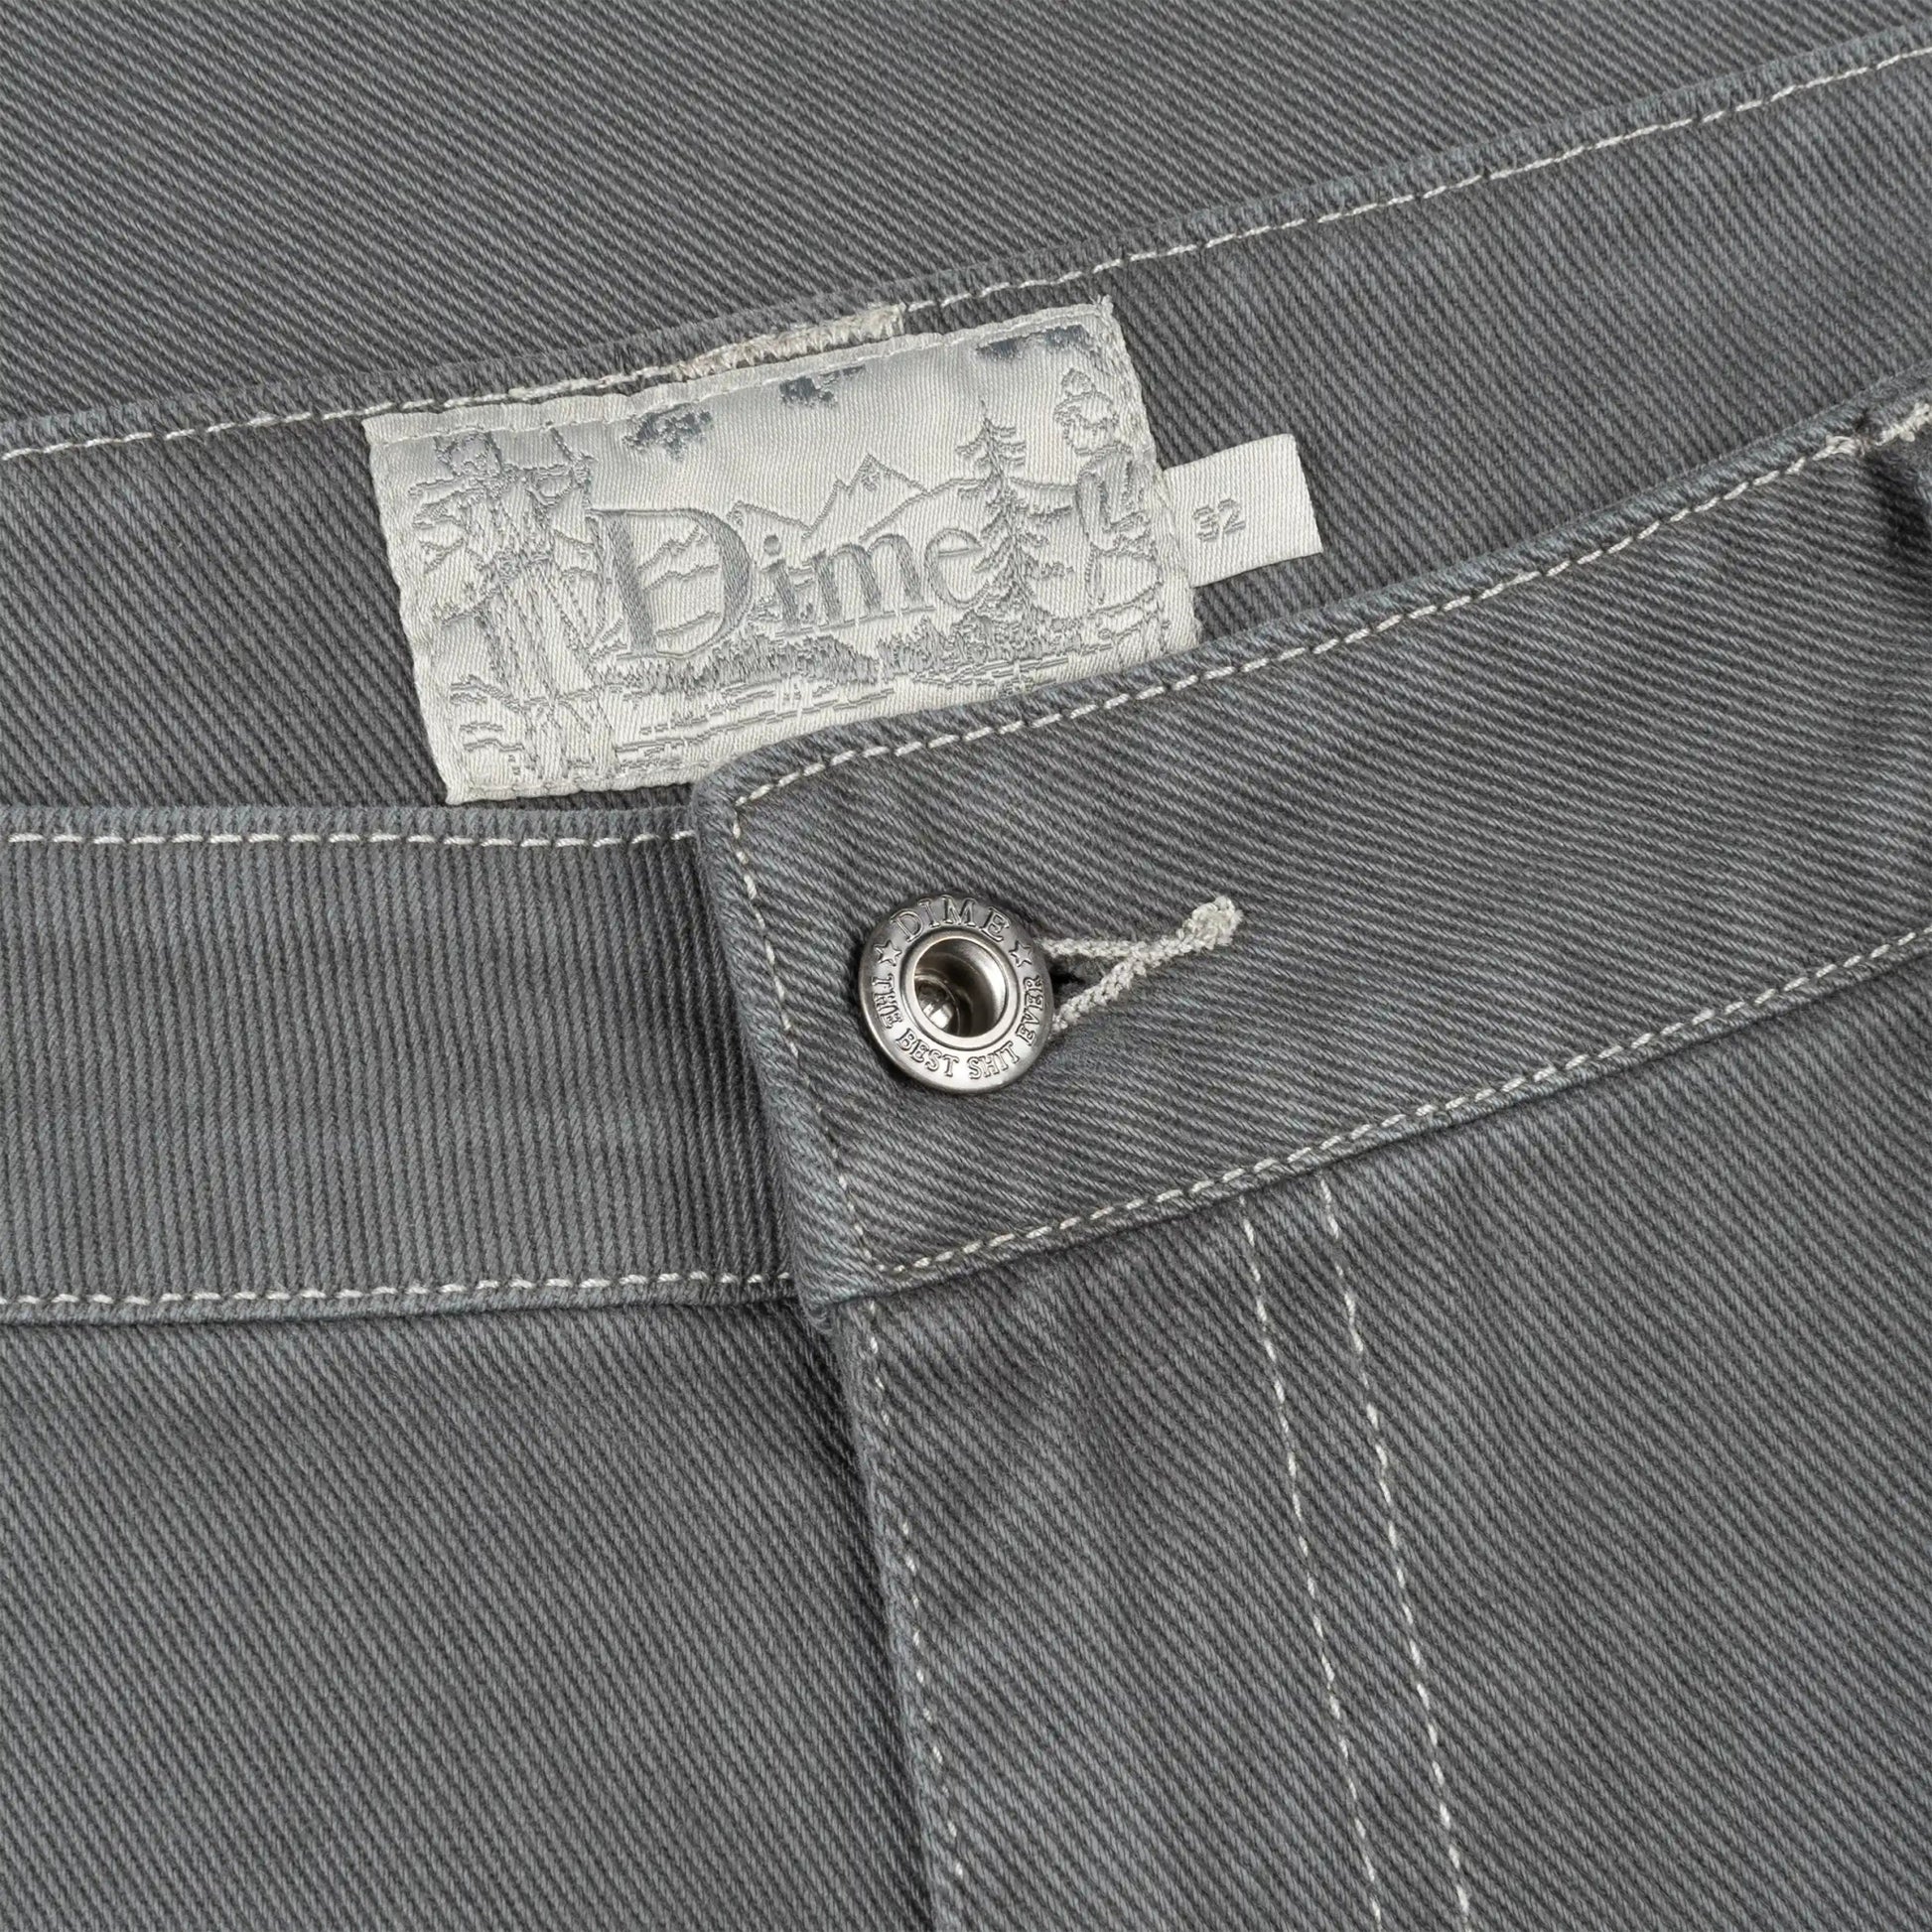 Dime Classic Baggy Denim Pants, dark gray - Tiki Room Skateboards - 4